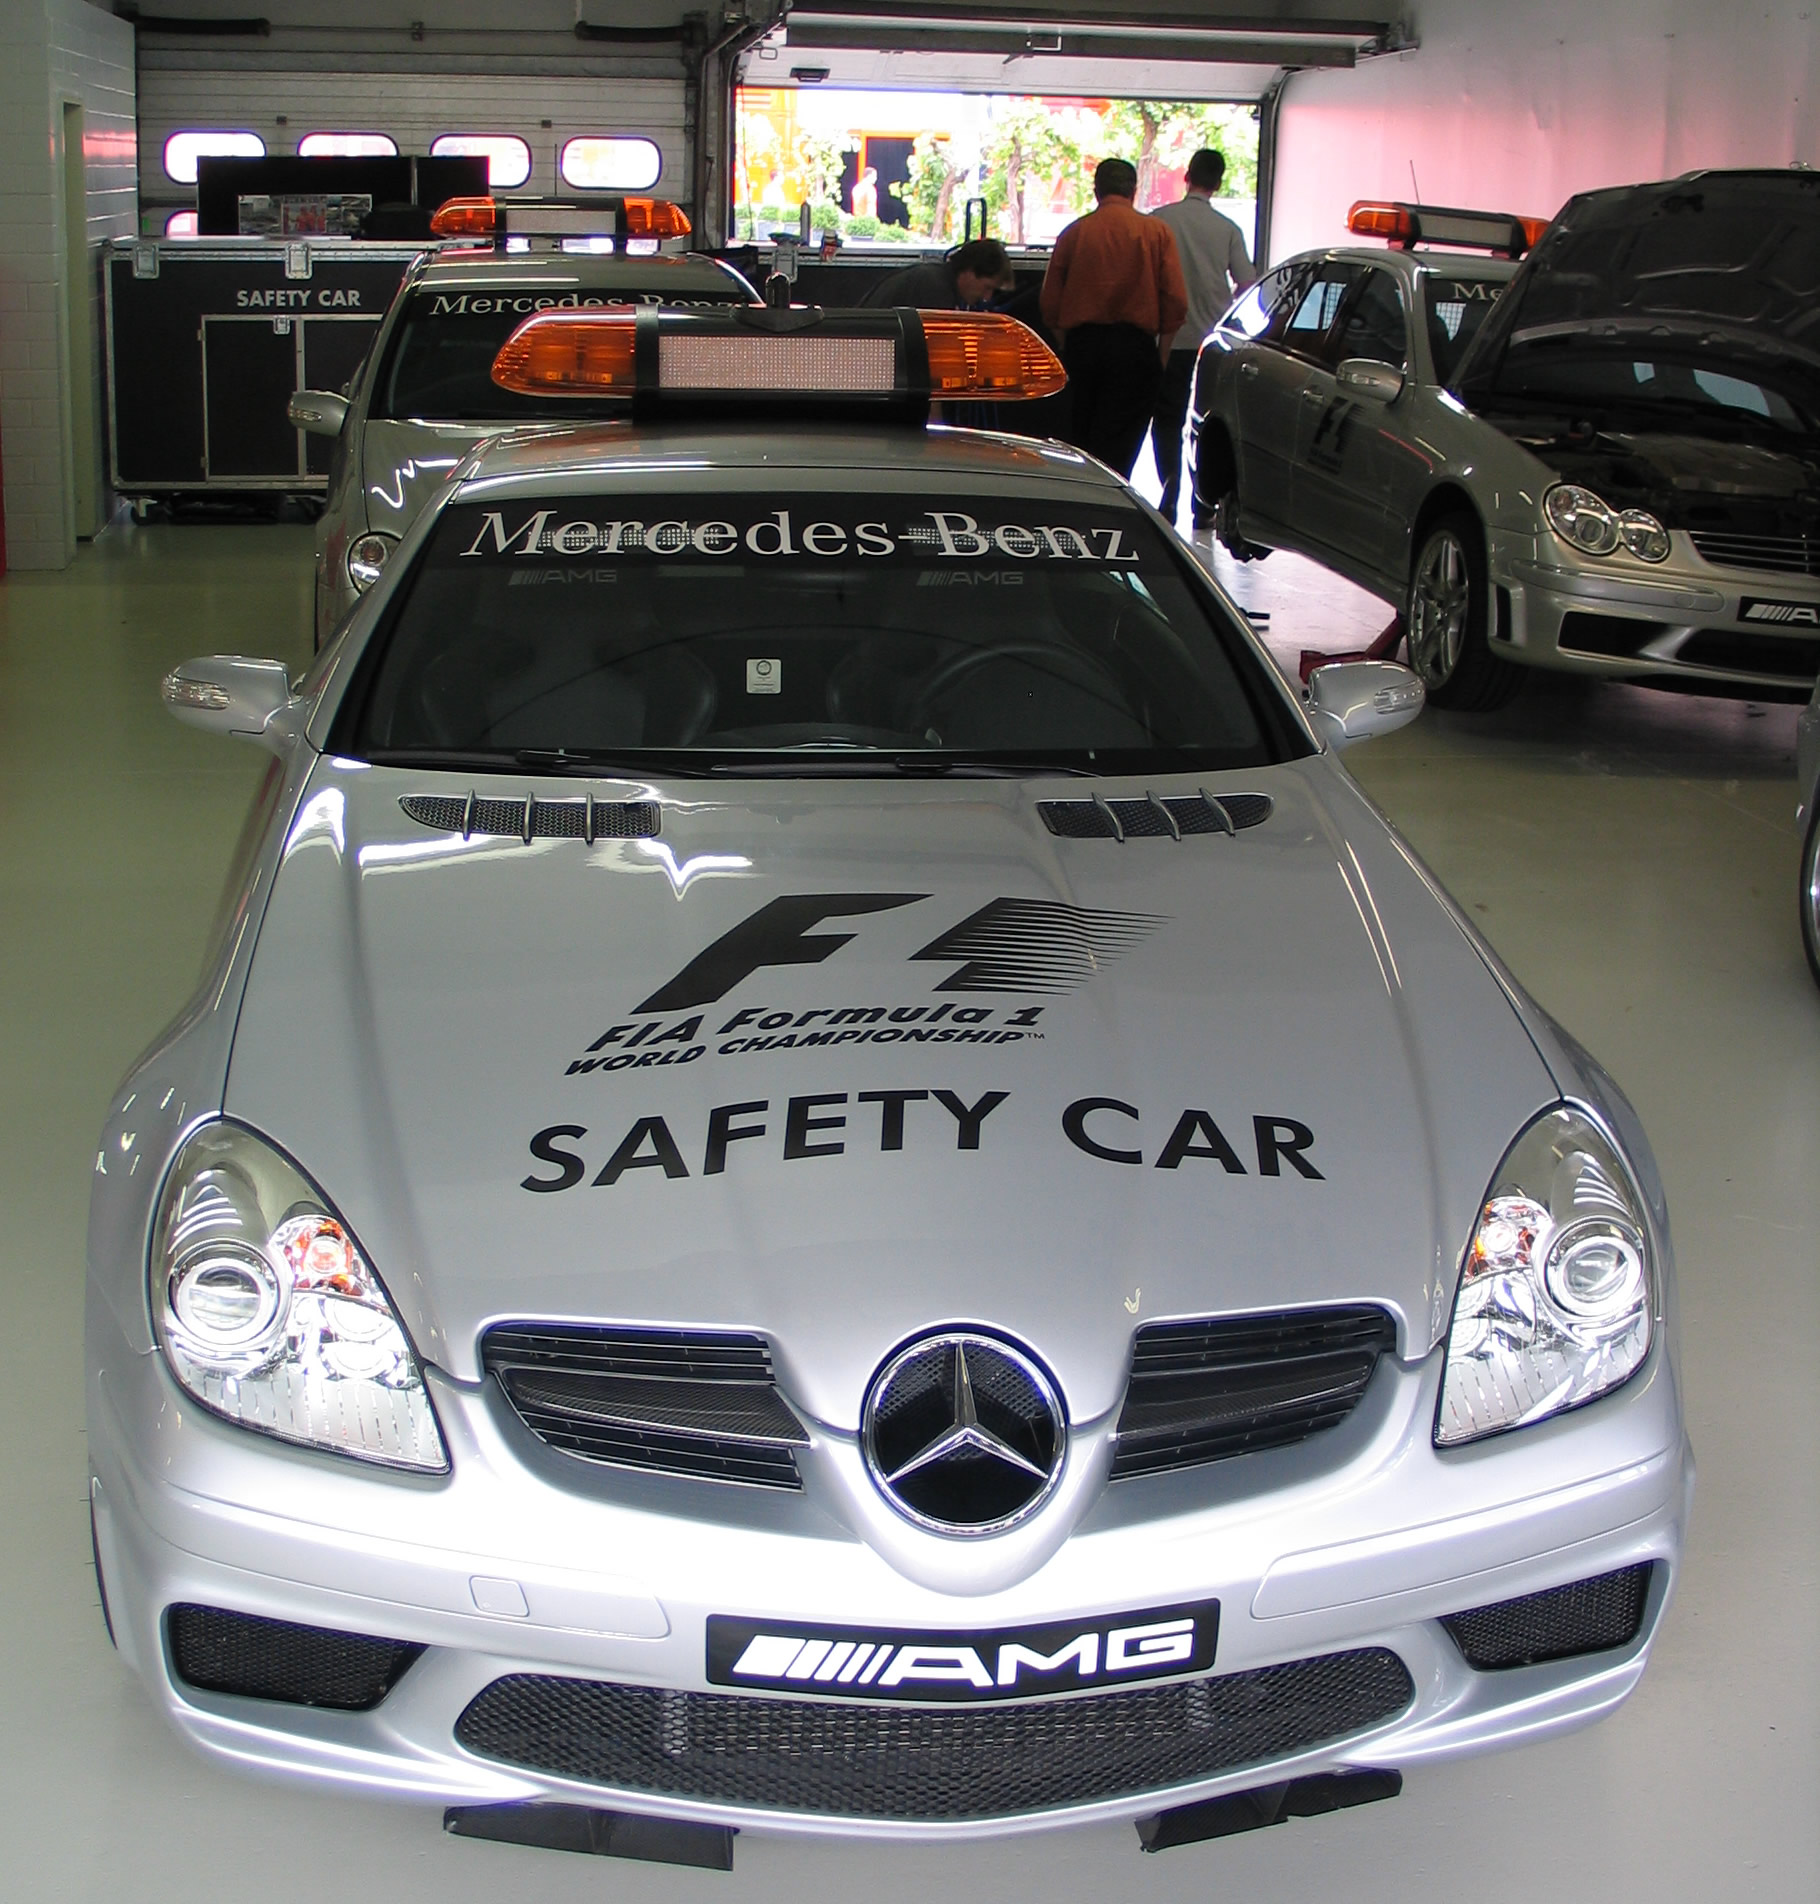 ファイル Hockenheimring Safety Car2 Jpg Wikipedia